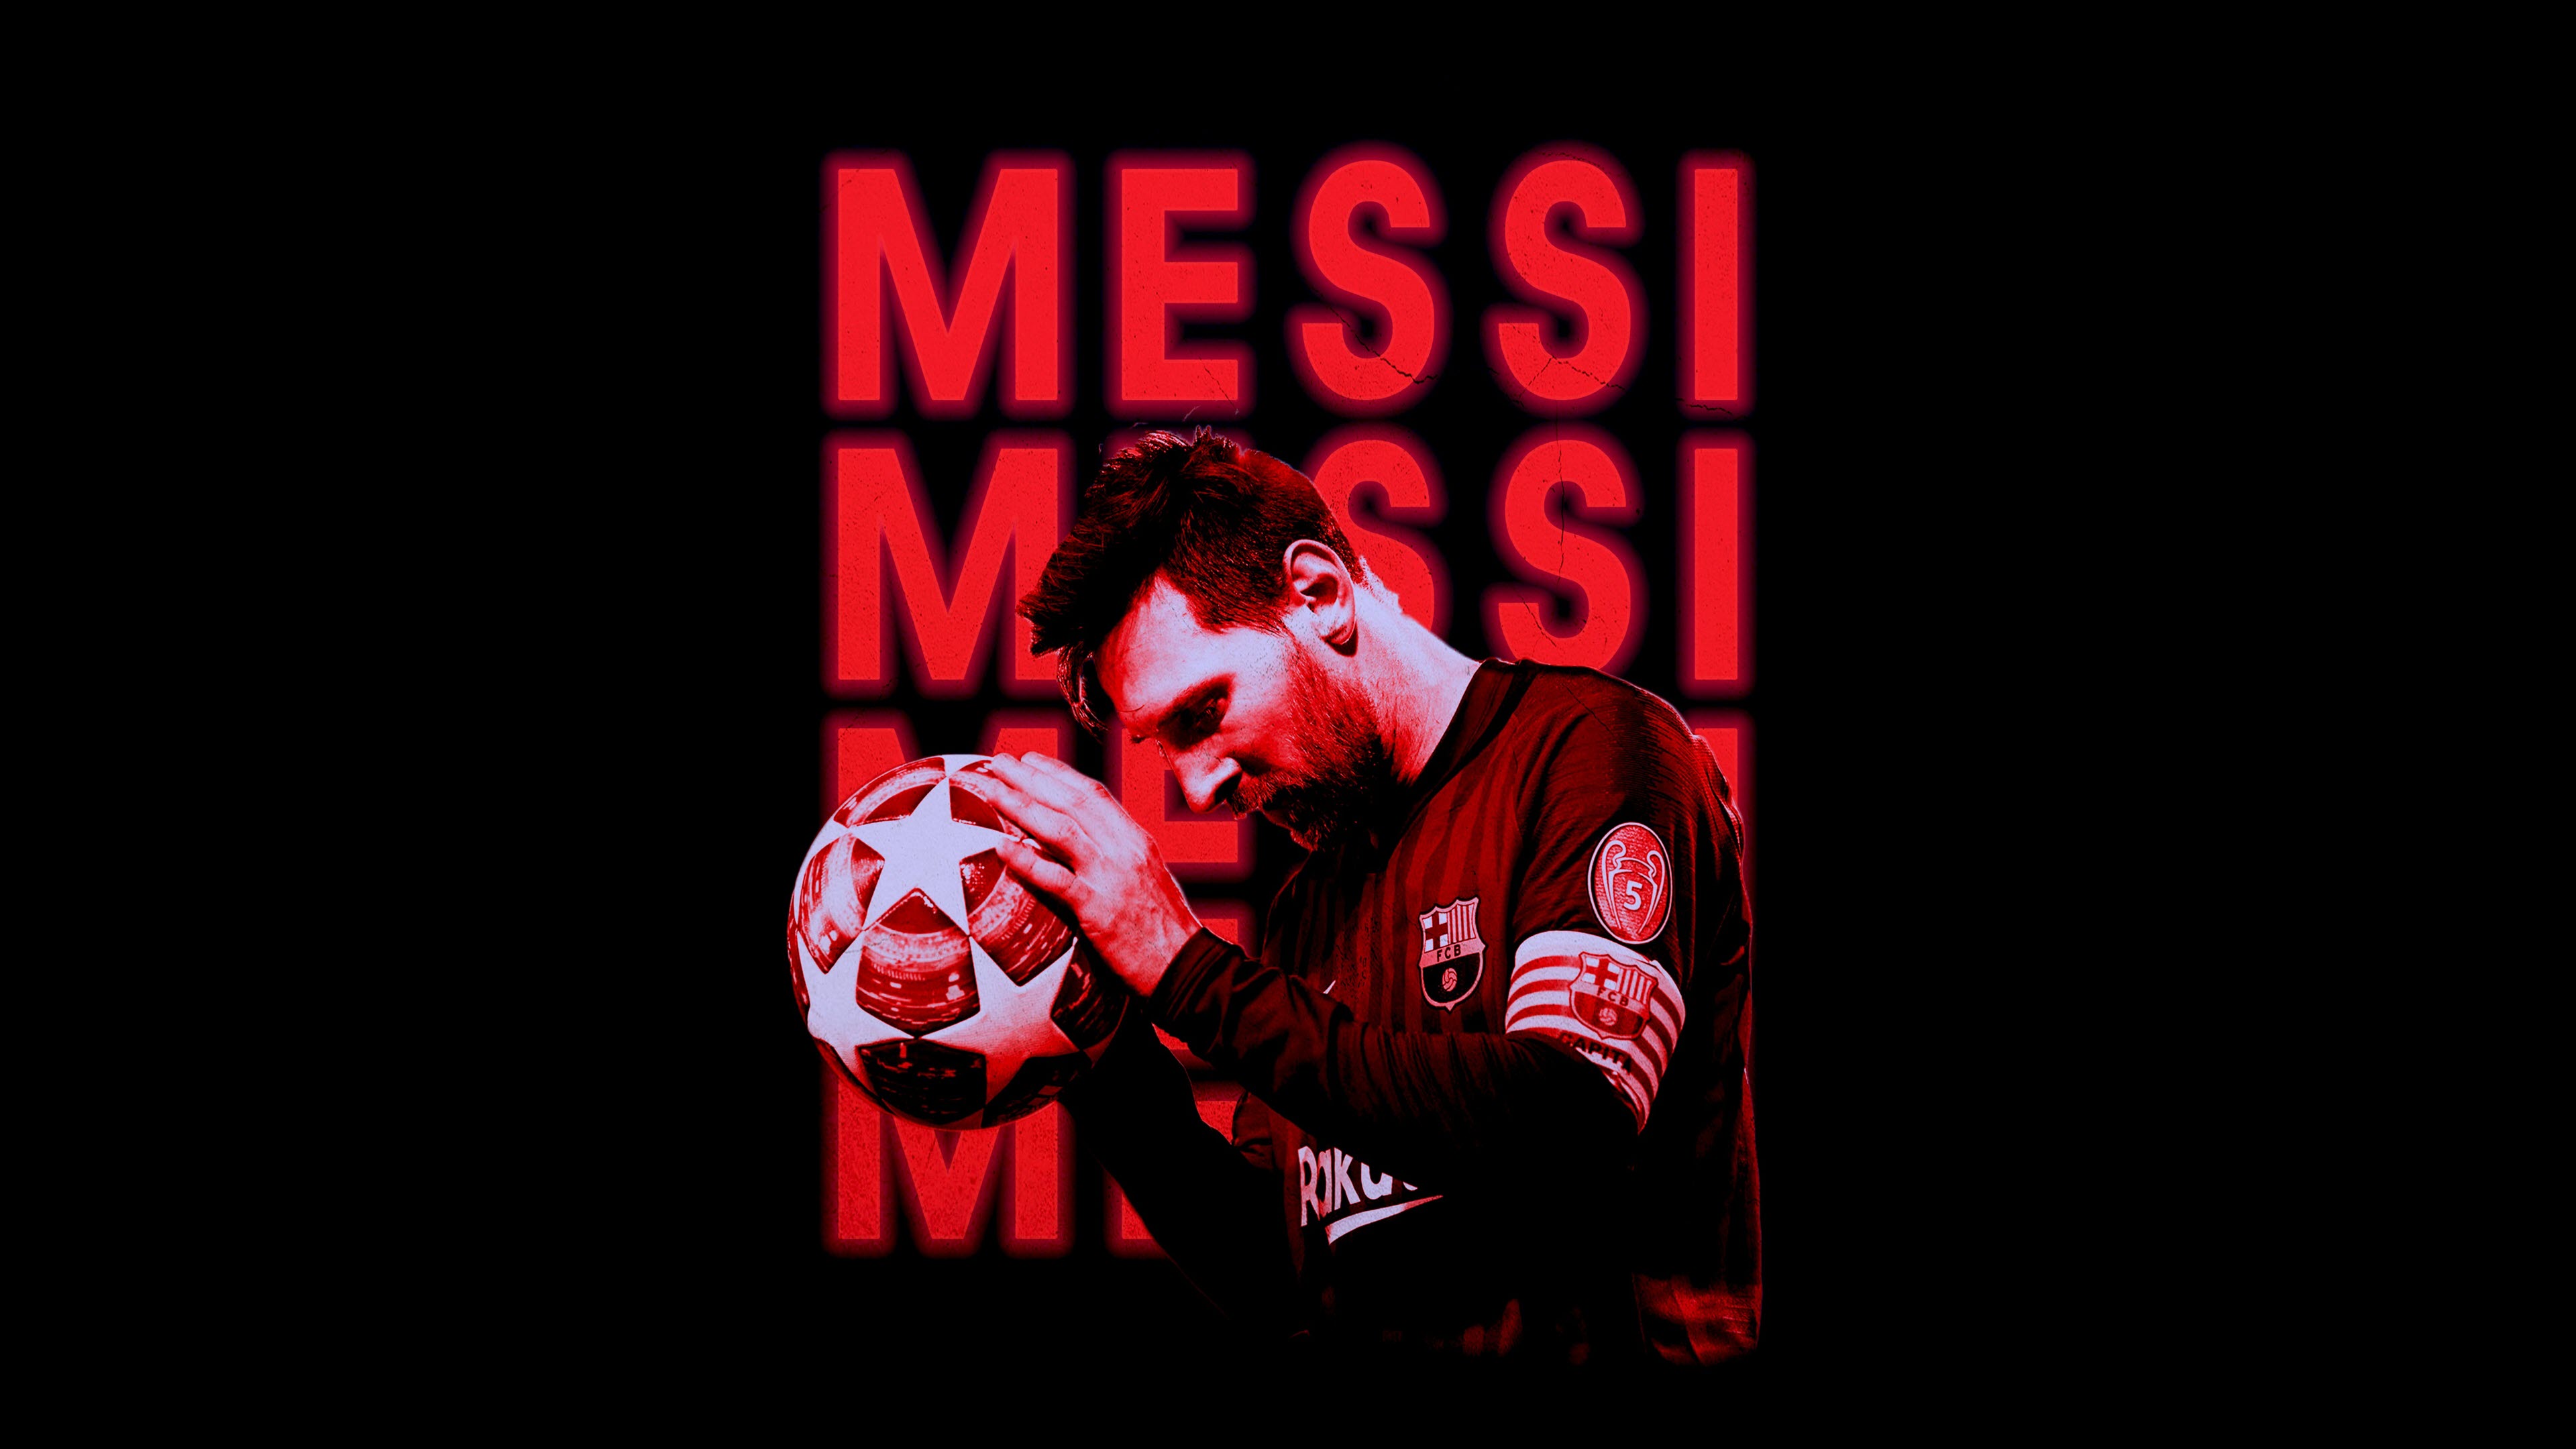 Hãy thưởng thức hình nền Messi 4K để cảm nhận sự sang trọng và chuyên nghiệp của chàng cầu thủ này. Từ đường chuyền tinh tế đến những pha ghi bàn ngoạn mục, Messi luôn khiến người hâm mộ ngẩn ngơ và phát cuồng. Đừng bỏ lỡ cơ hội thưởng thức hình nền 4K độc đáo của Messi ngay hôm nay.